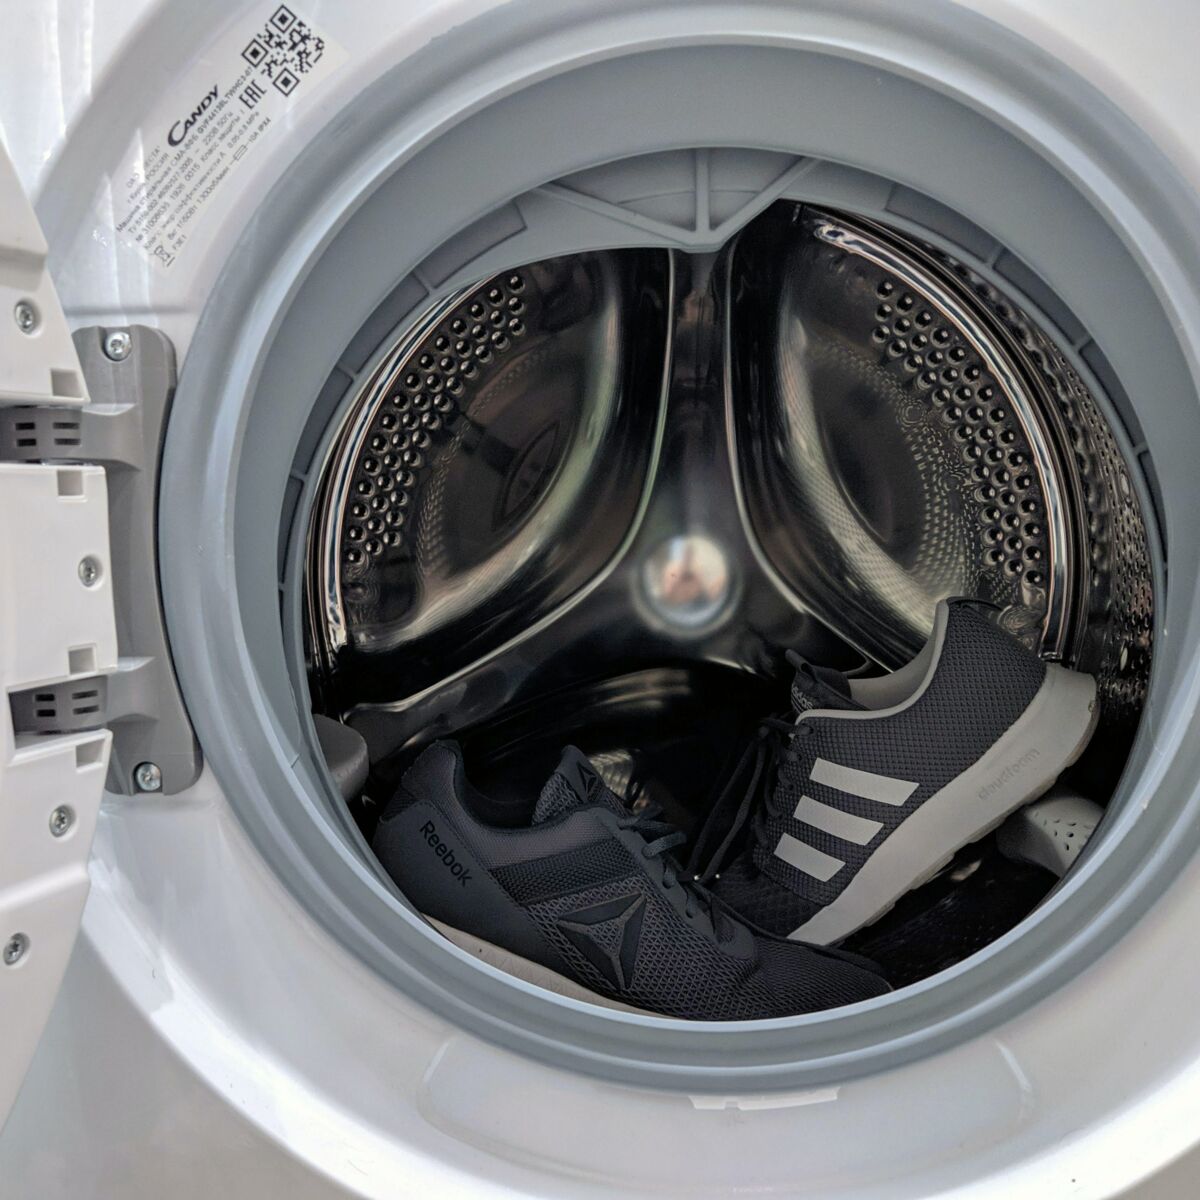 Changer le tuyau d'évacuation d'une machine à laver le linge